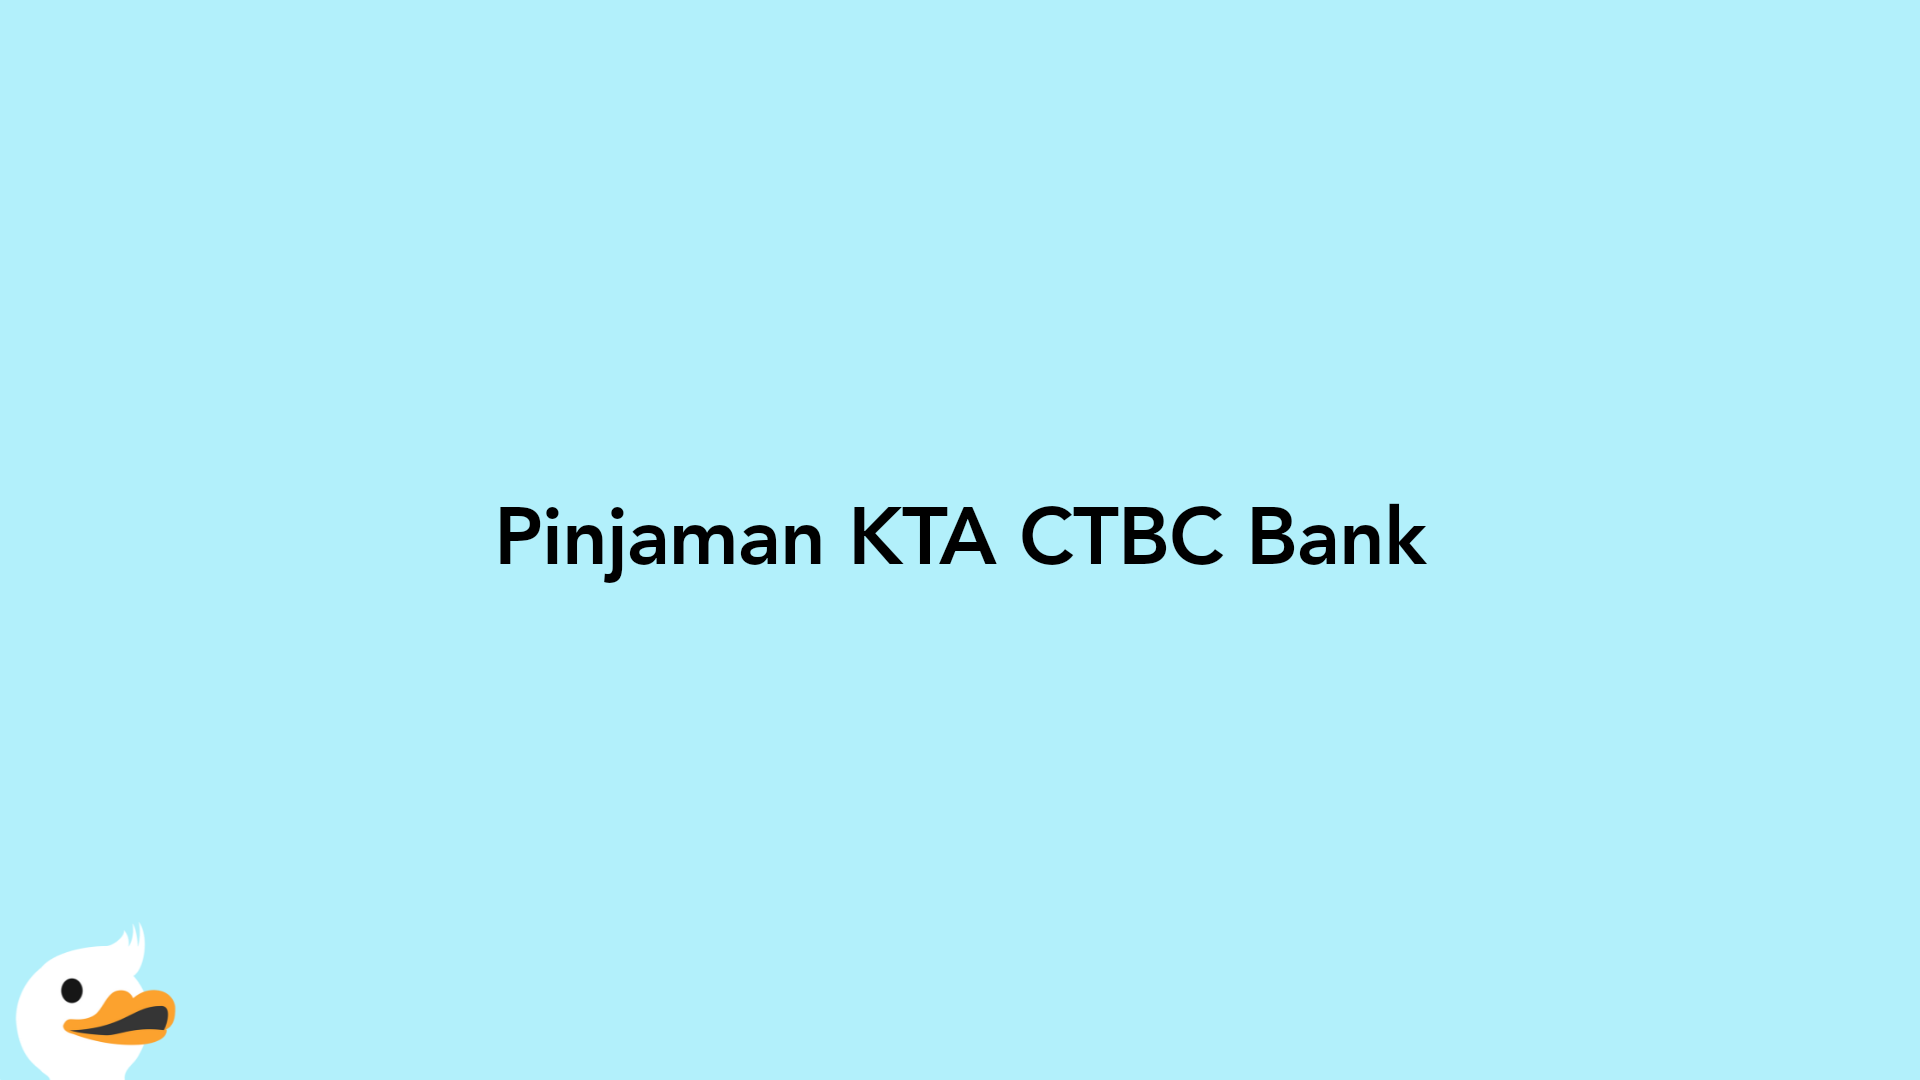 Pinjaman KTA CTBC Bank